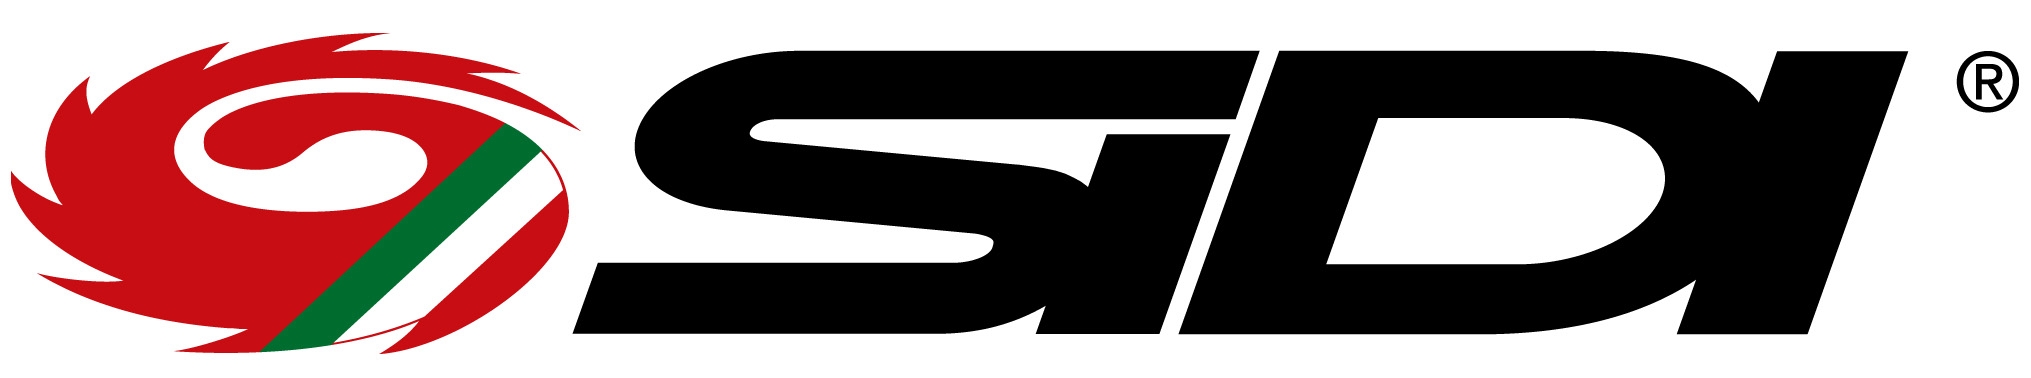 03_sidi_r_logo